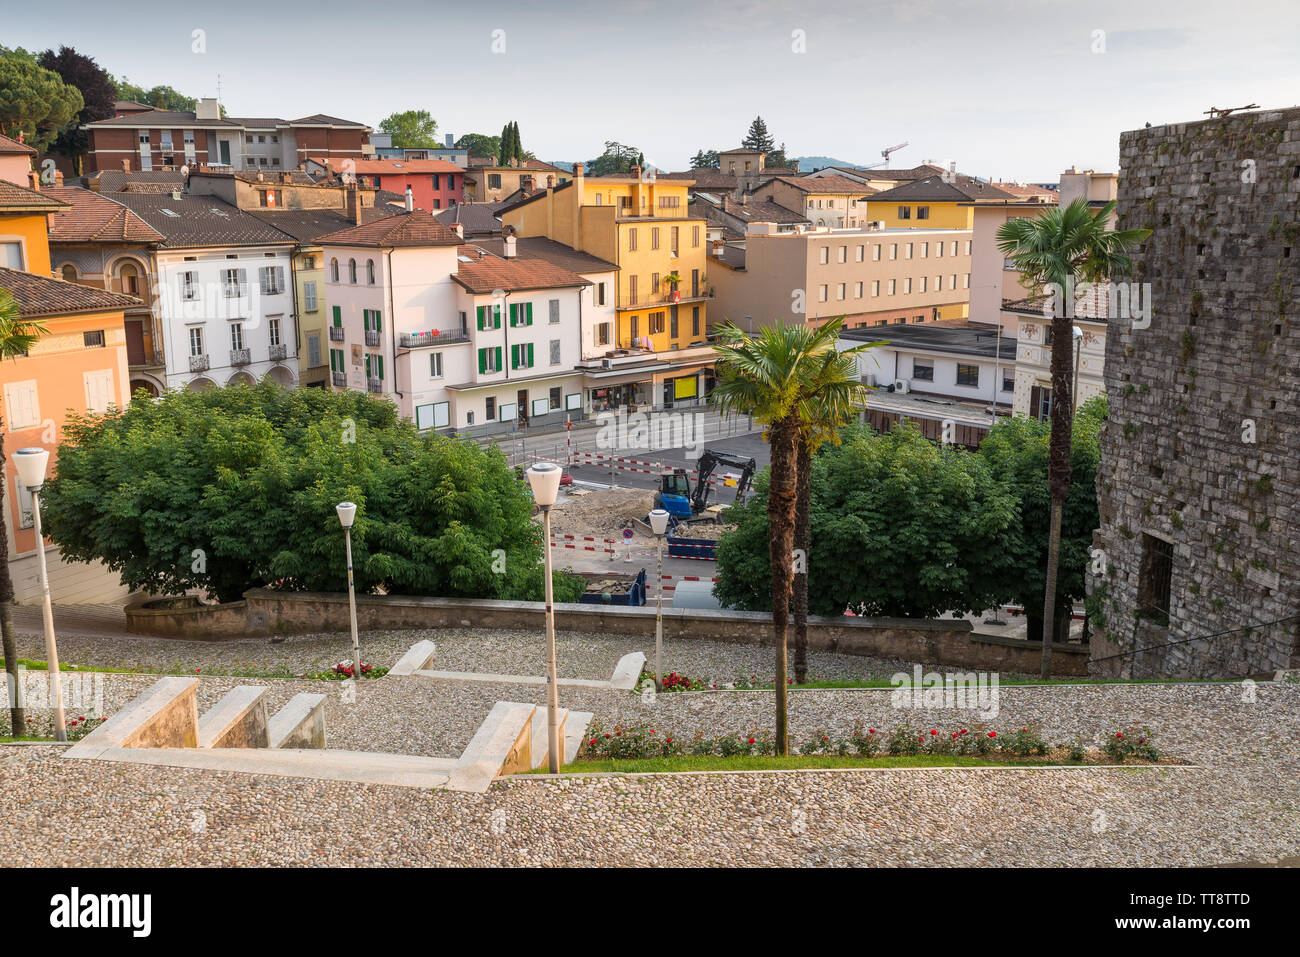 Travaux d'urbanisation dans le centre historique d'une ville Suisse, Lugano Banque D'Images